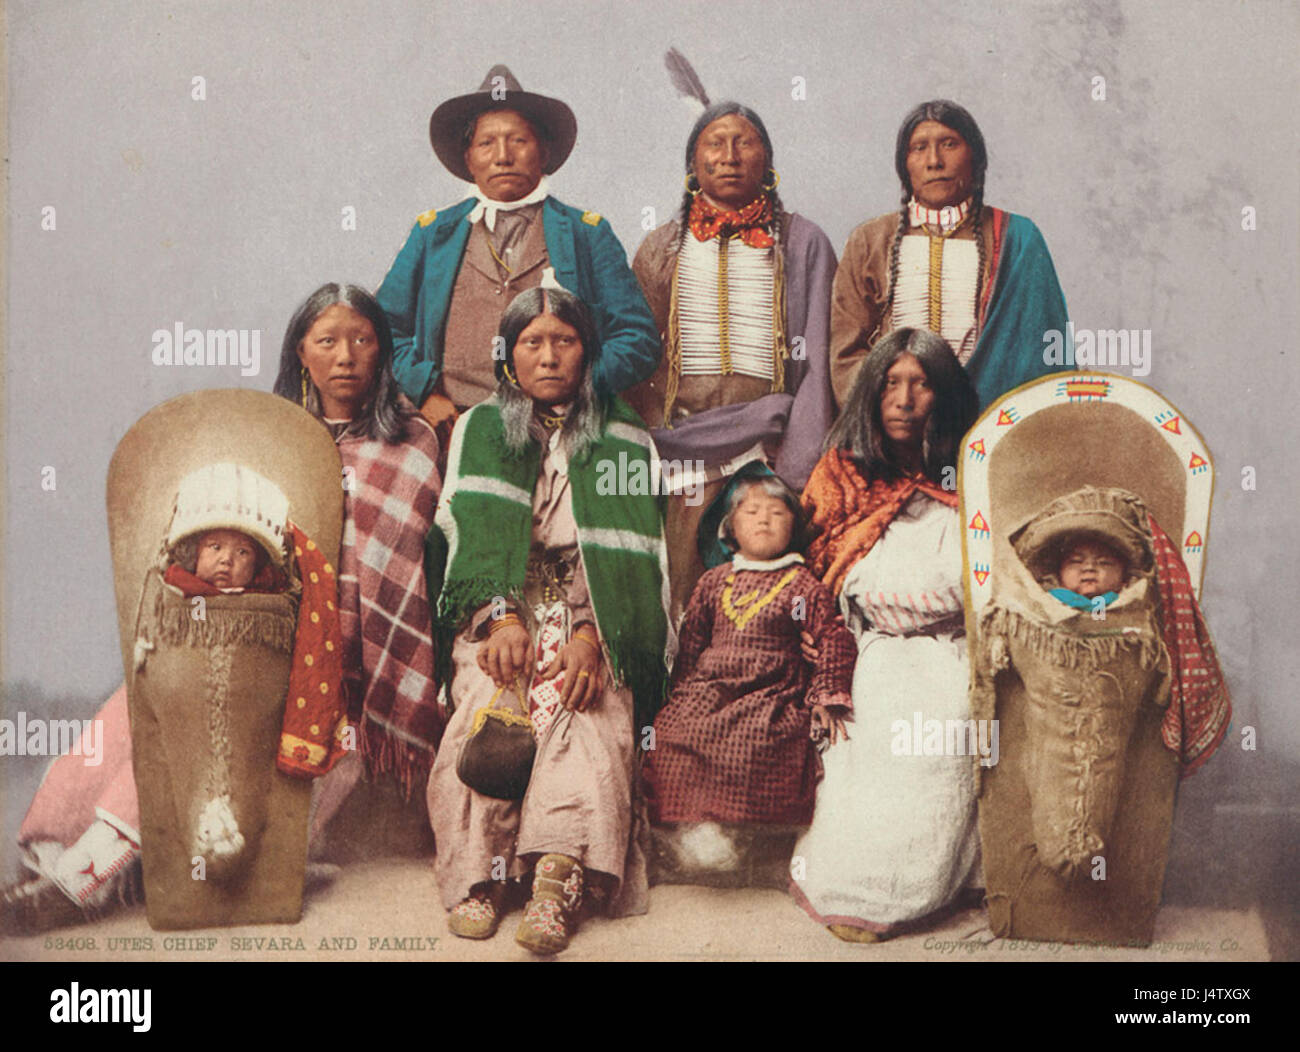 Utes Chief Sevara e famiglia Detroit Photographic Co 1899 Foto Stock